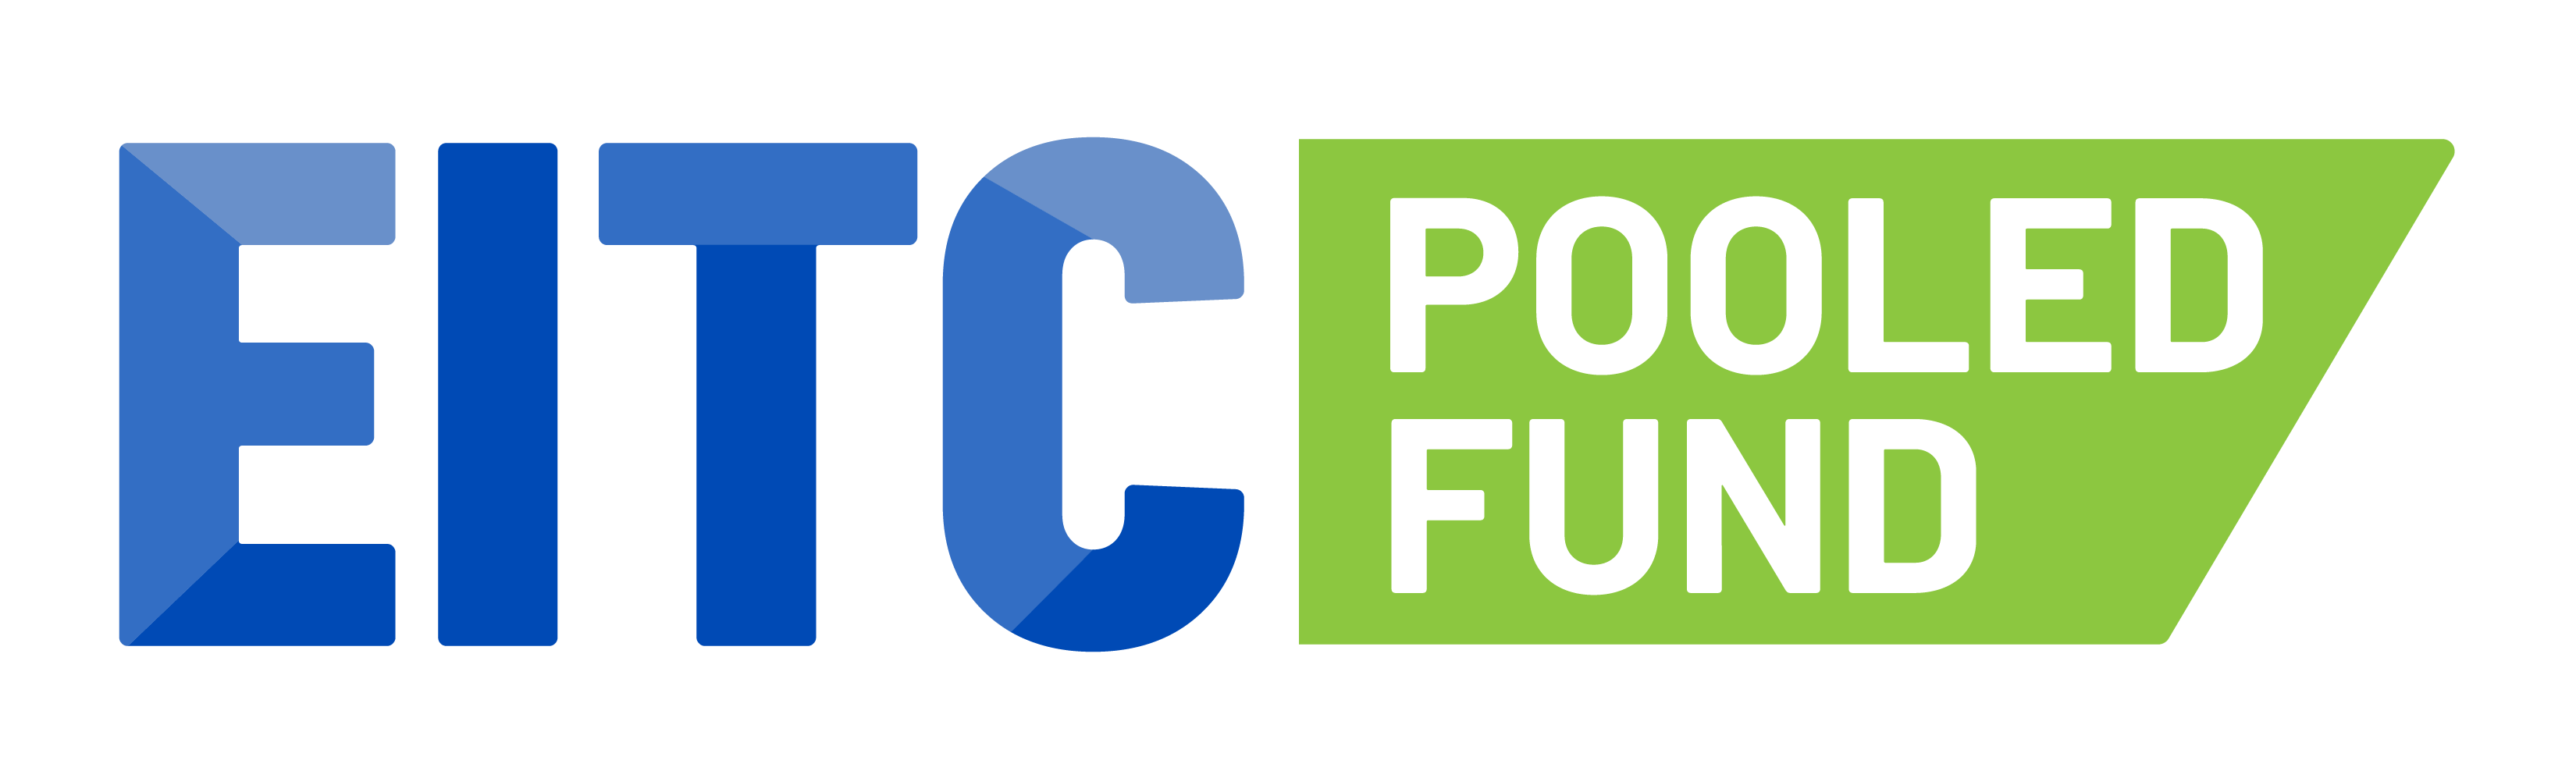 EITC Pooled Fund Logo